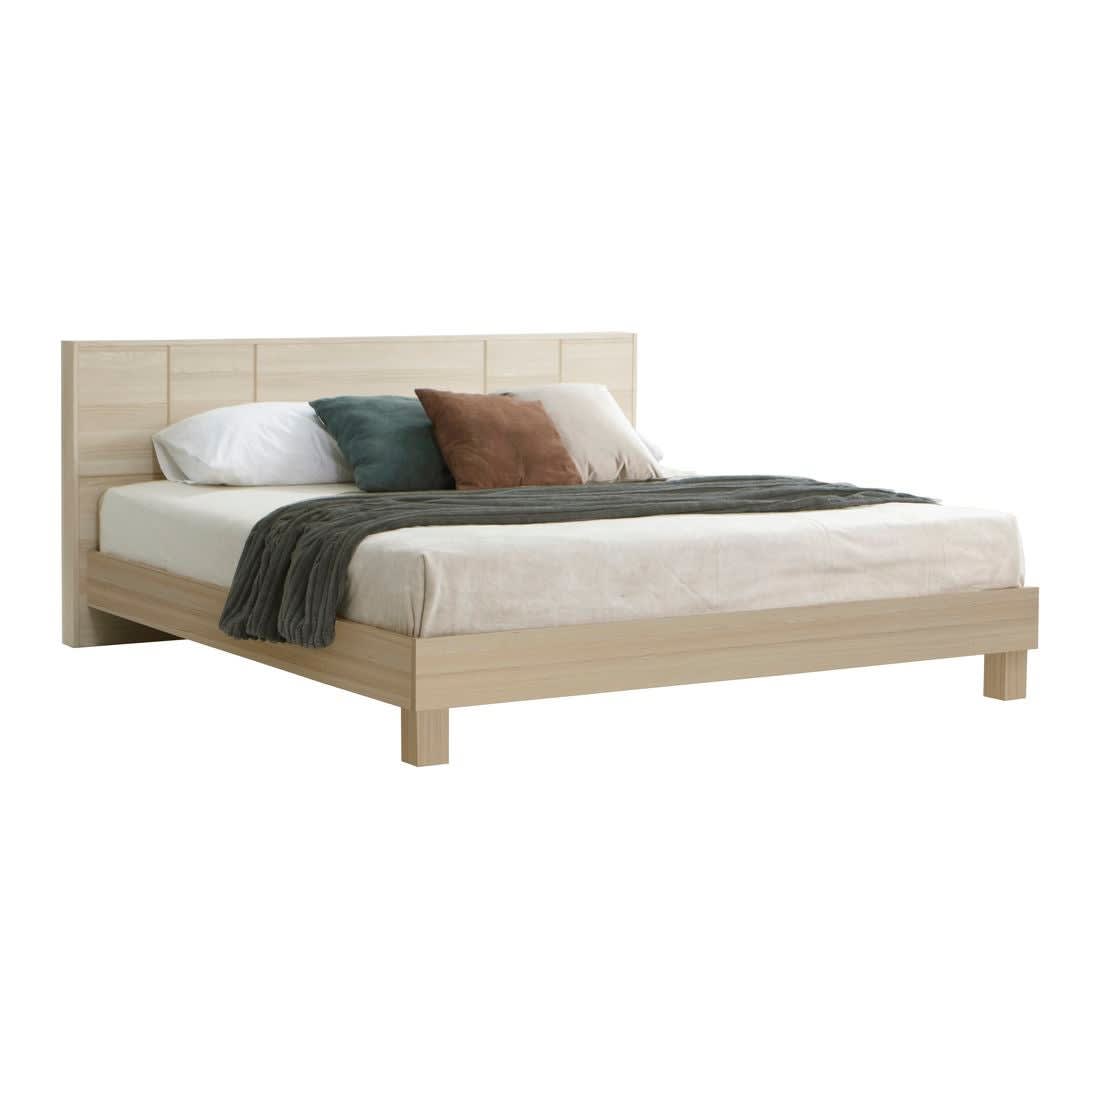 Koncept Furniture เตียงนอน 6 ฟุต รุ่น Hakone สีไม้อ่อน-1